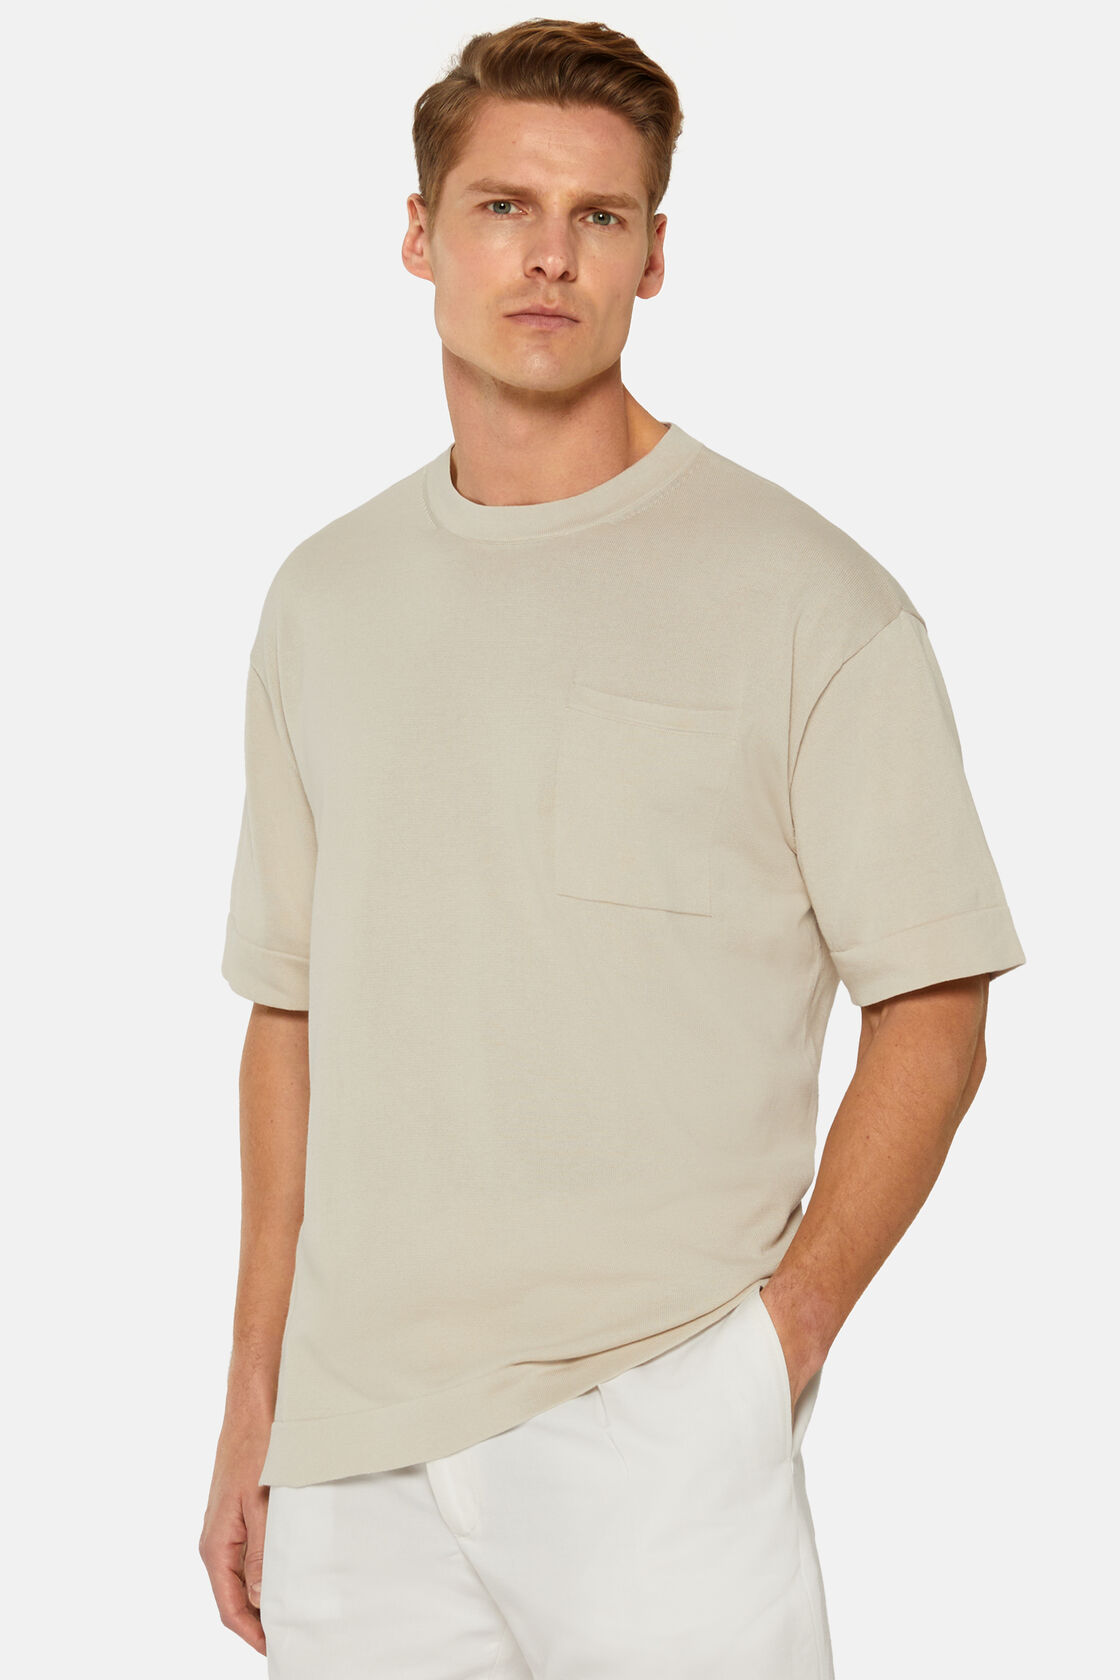 Κοντομάνικο πλεκτό μπλουζάκι από βαμβάκι pima στο χρώμα της άμμου, Sand, hi-res